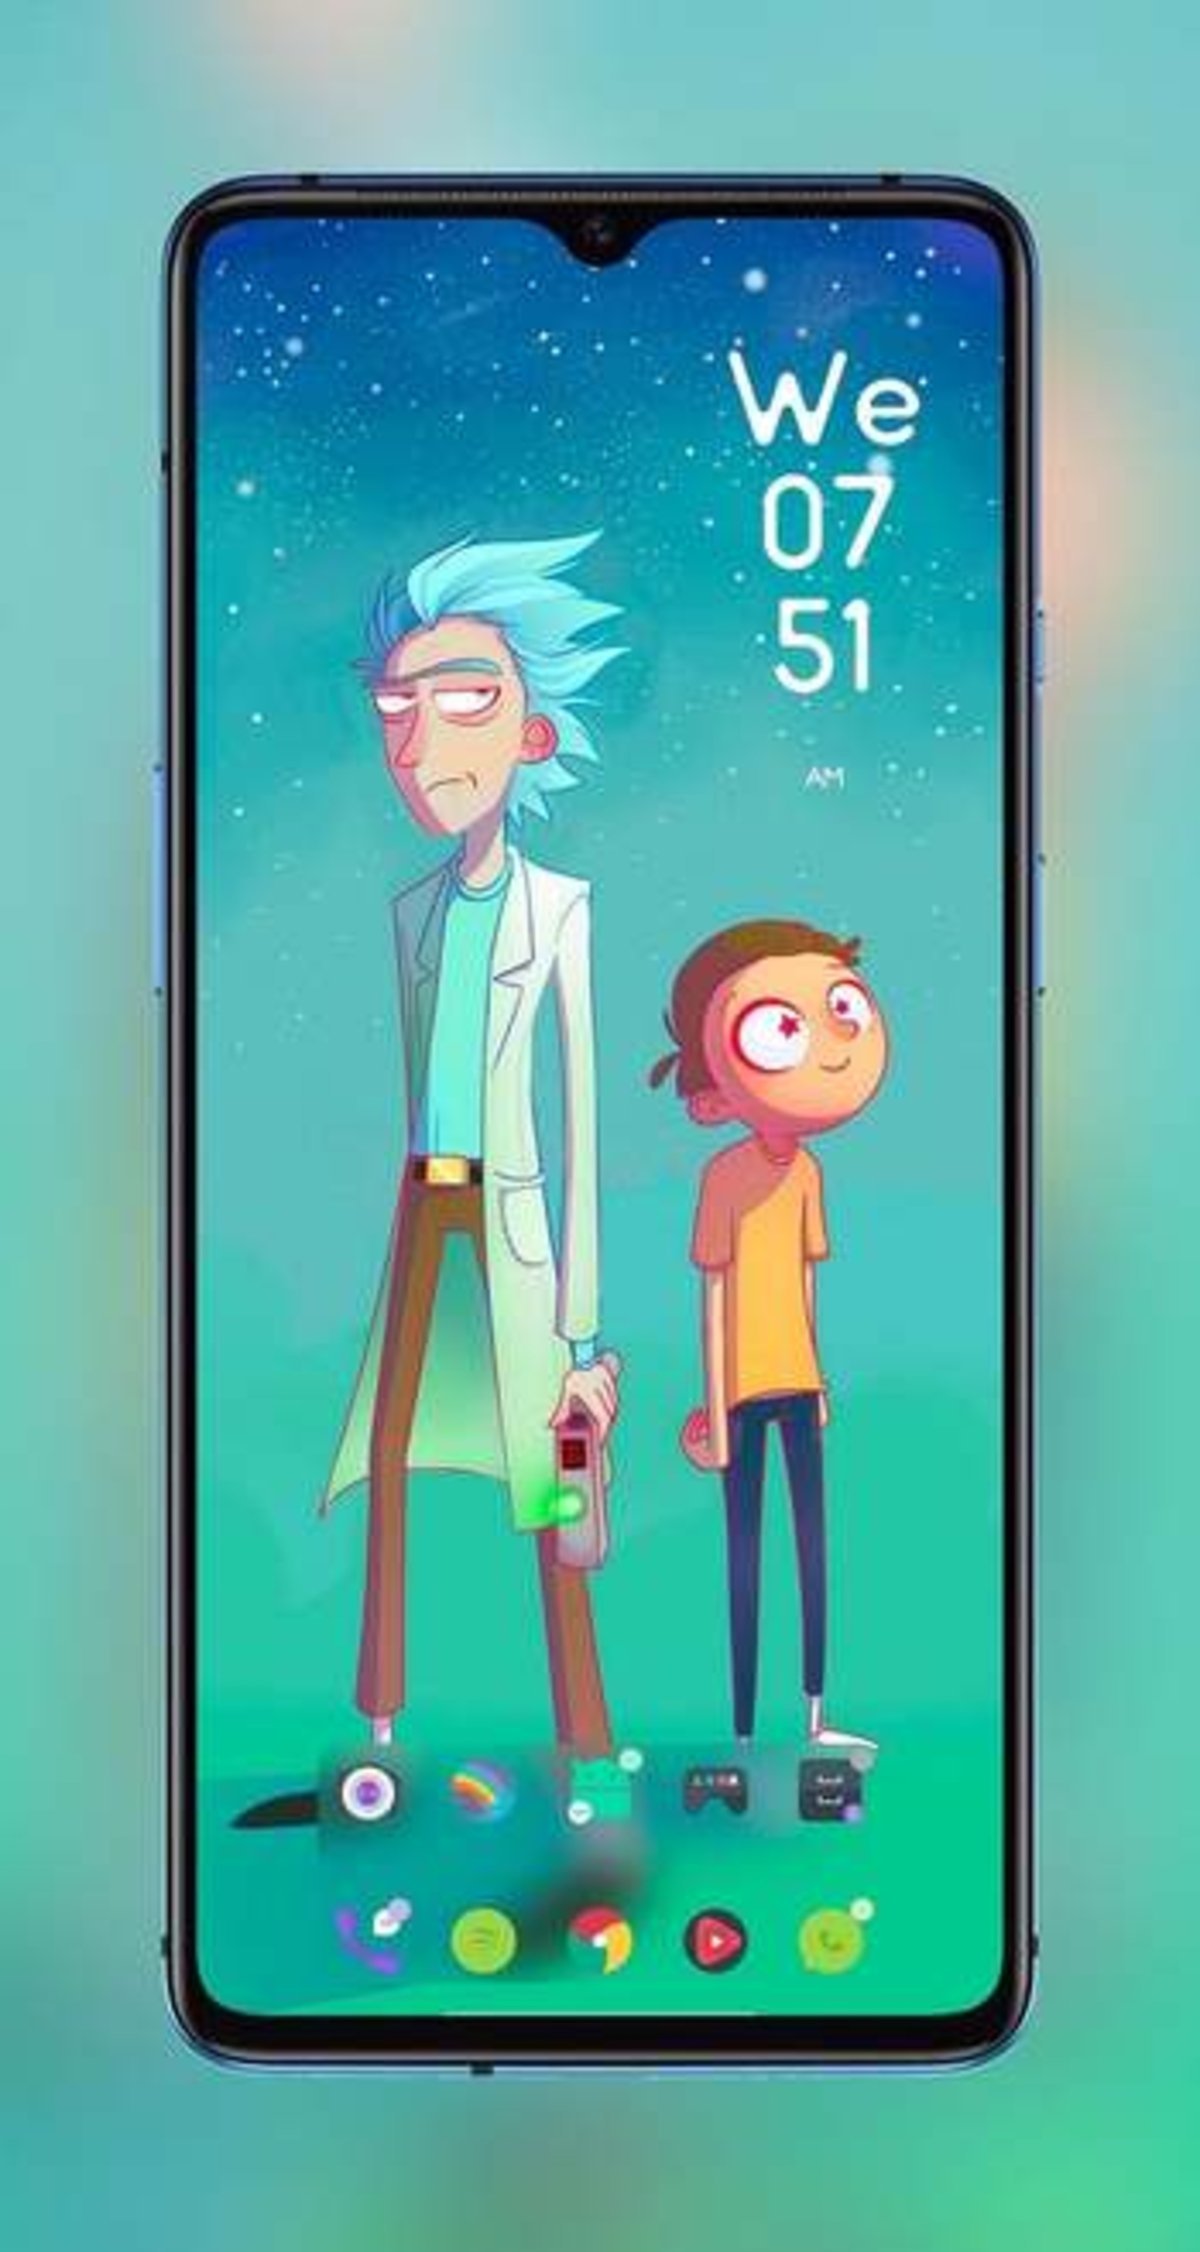 Personaliza tu smartphone Android con la serie de Rick y Morty